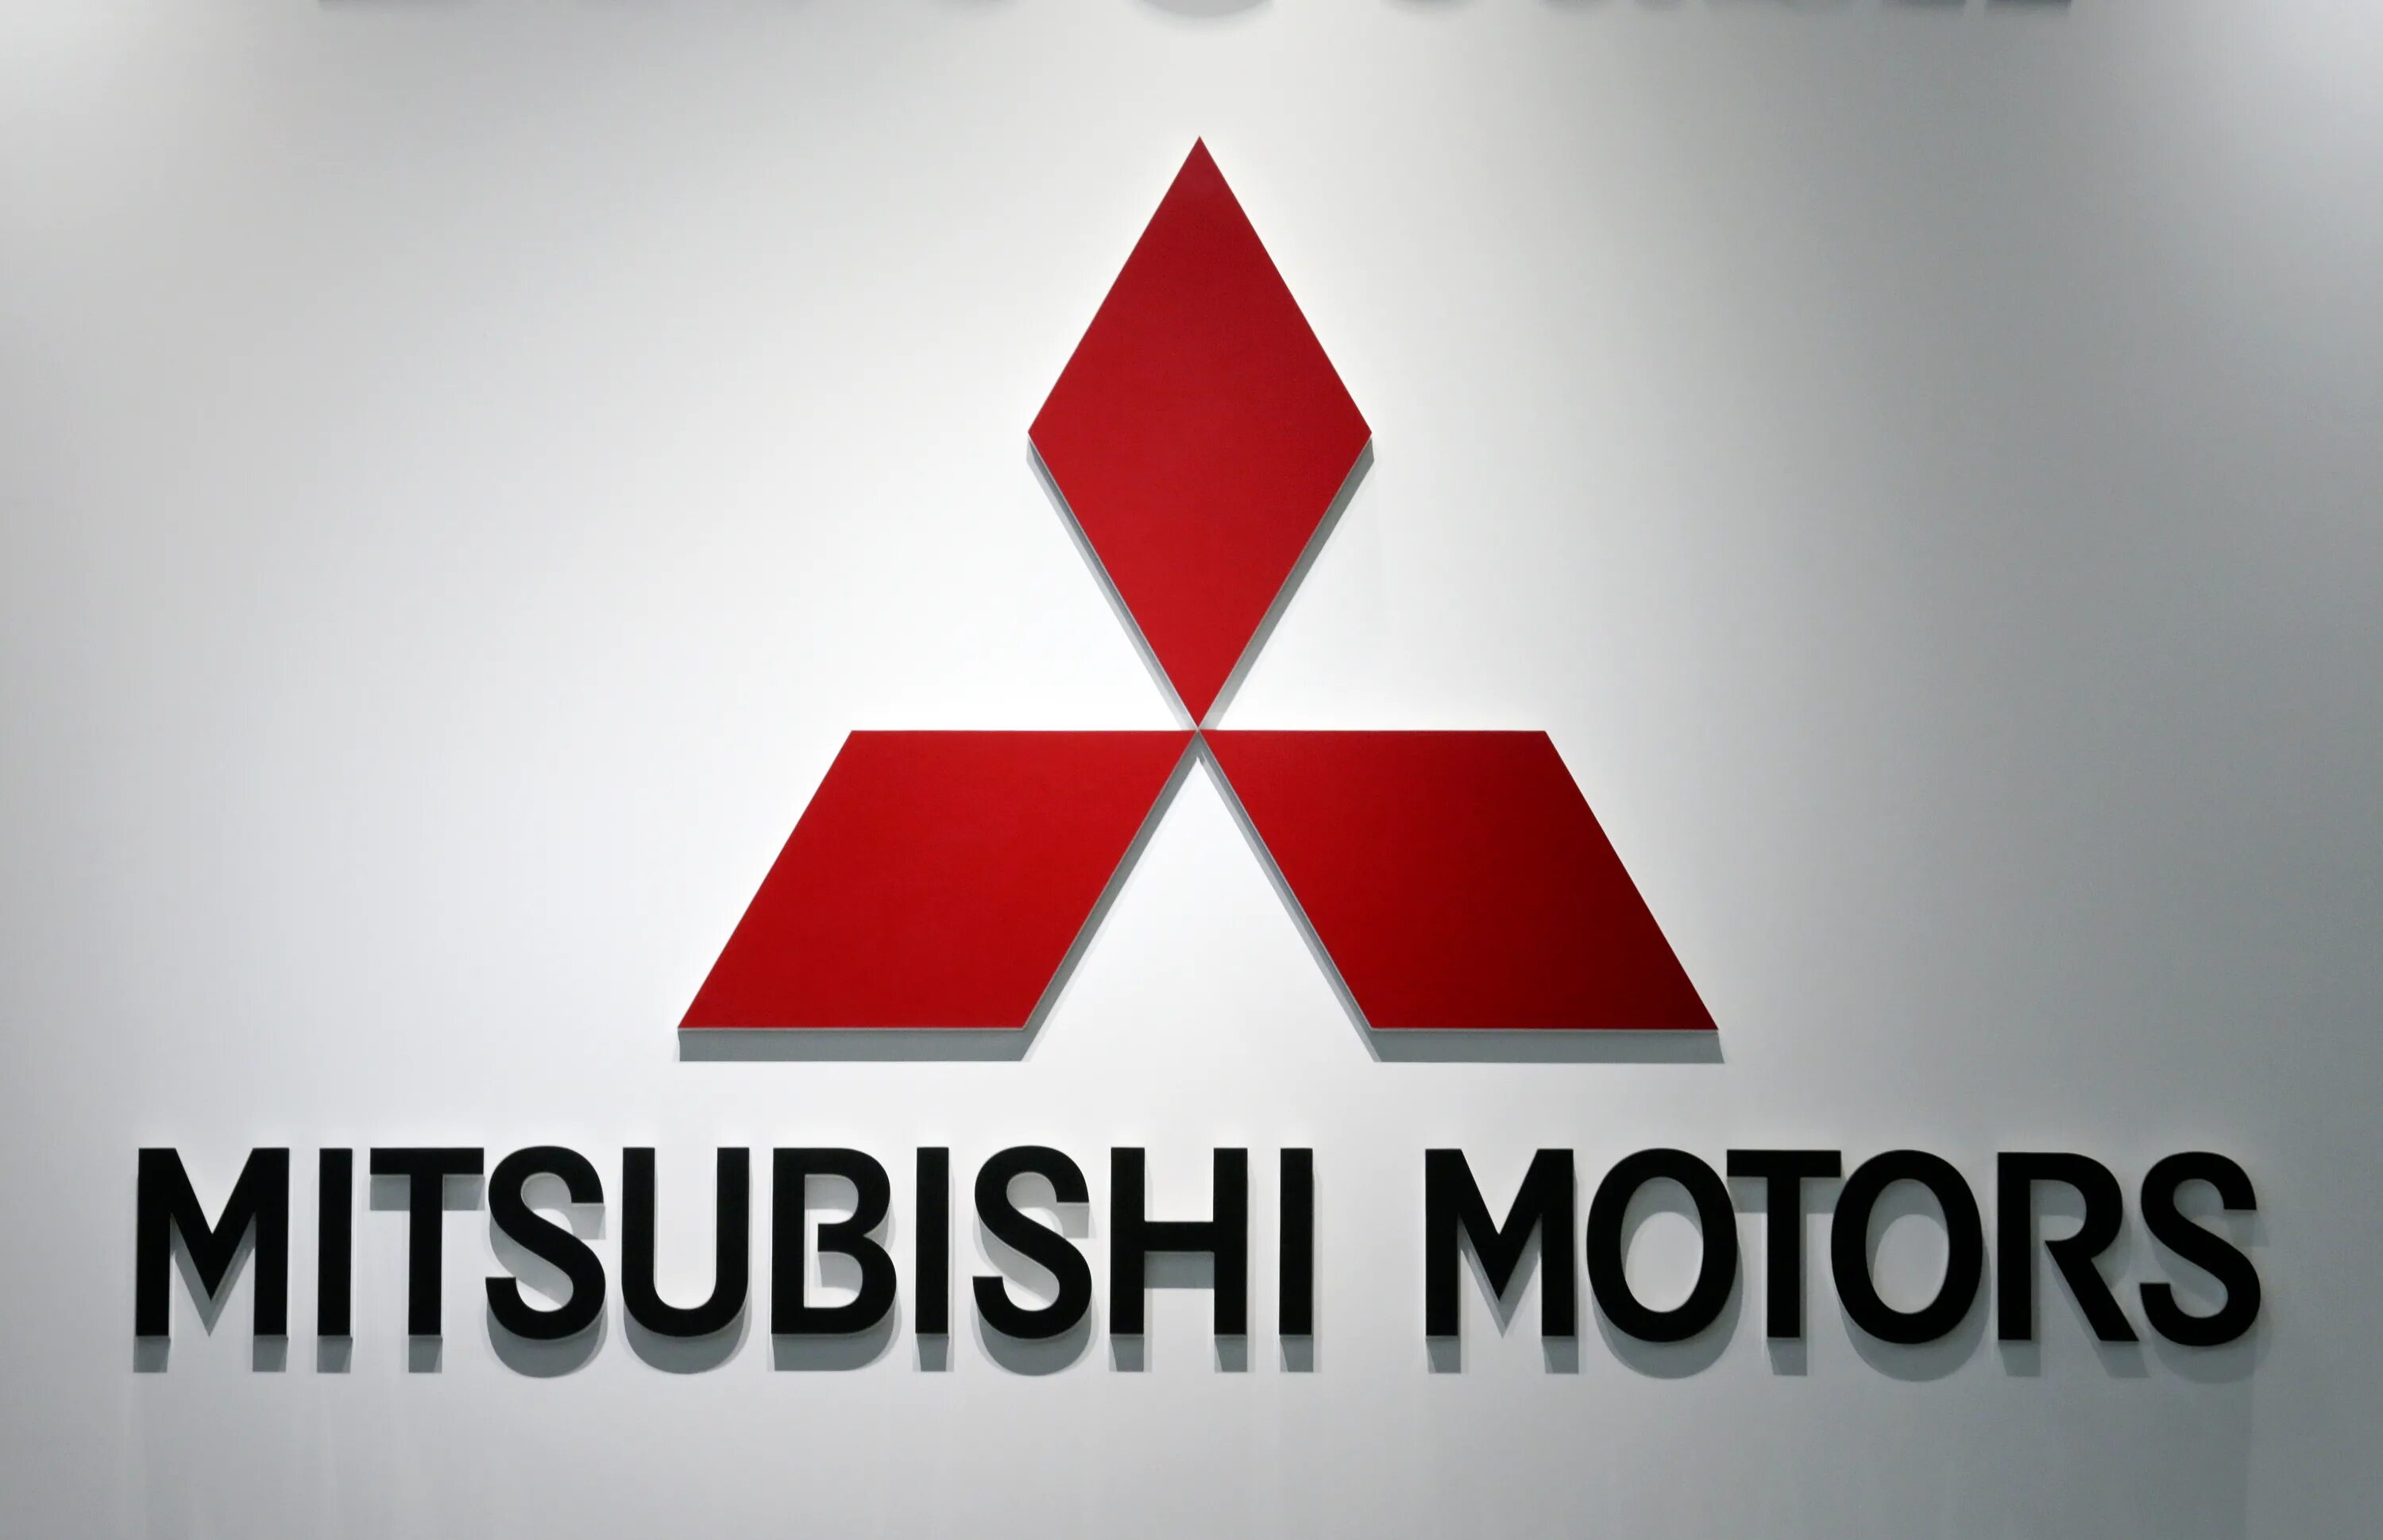 Логотип mitsubishi. Mitsubishi logo 2021. Mitsubishi значок Mitsubishi. Mitsubishi Motors Corporation logo. Mitsubishi Group автомобили Mitsubishi 2010 года.